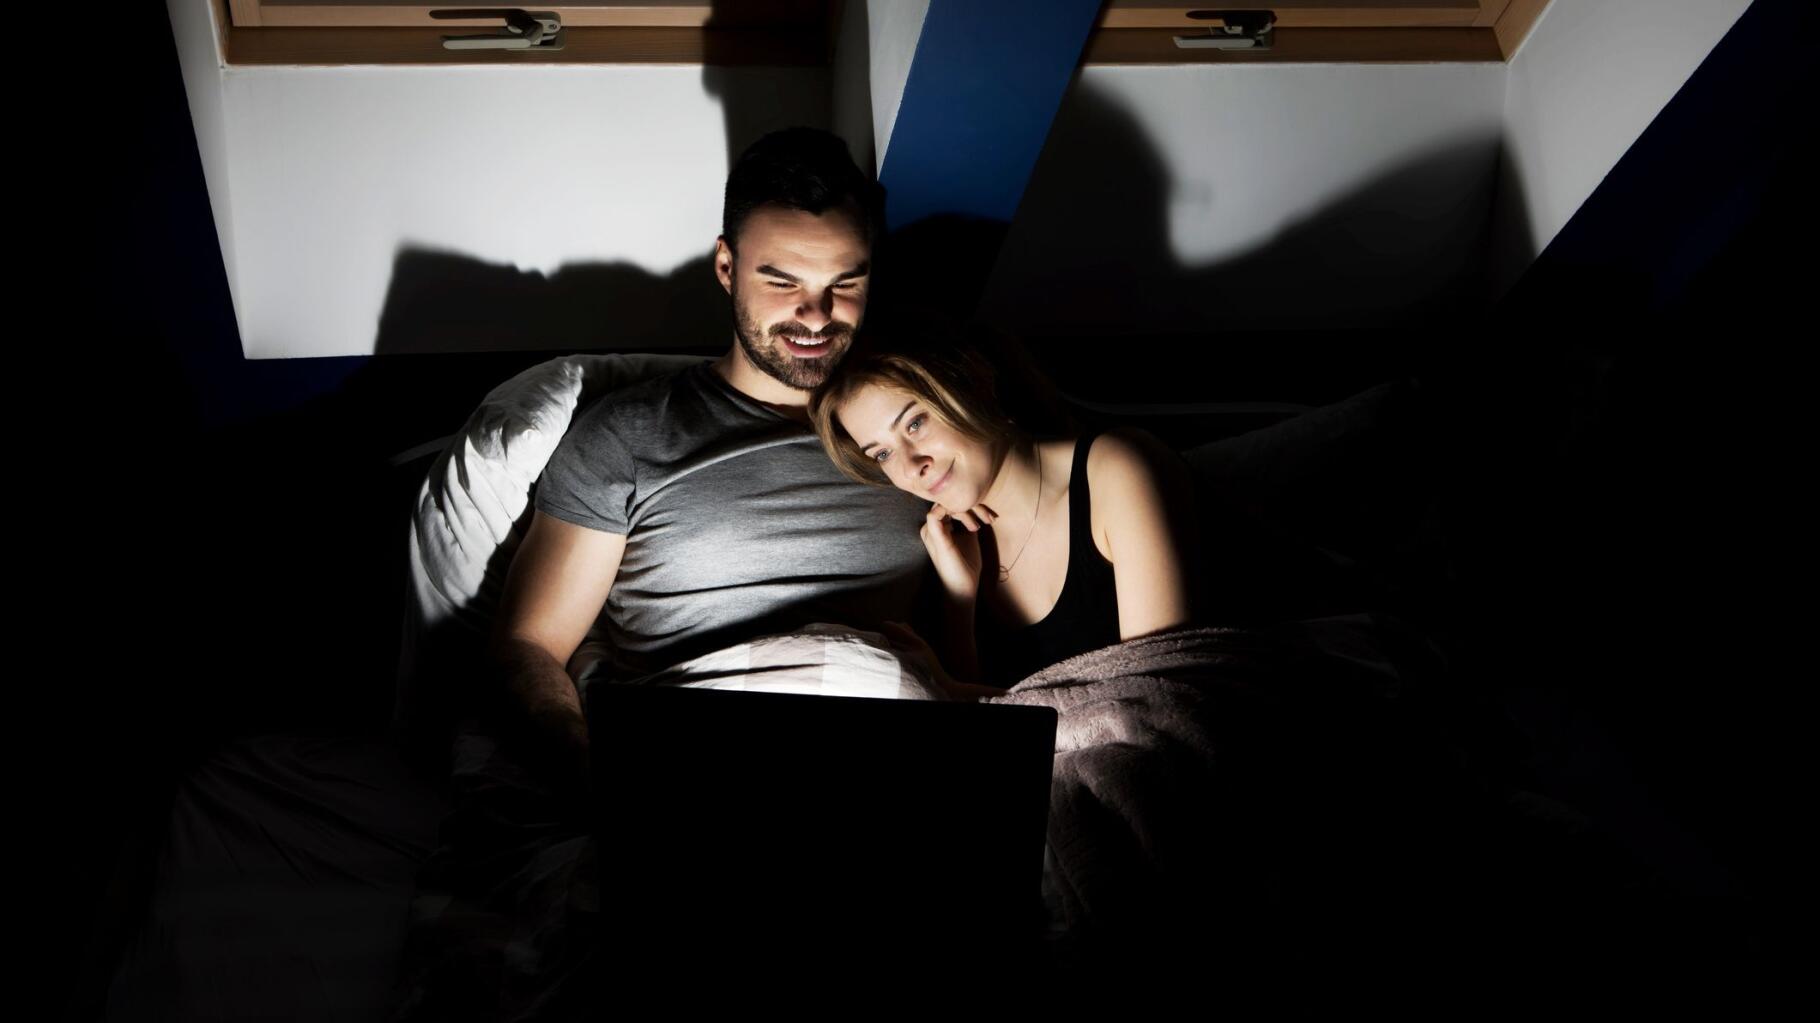 Regarder du porno en couple, une habitude qui peut ressouder une relation